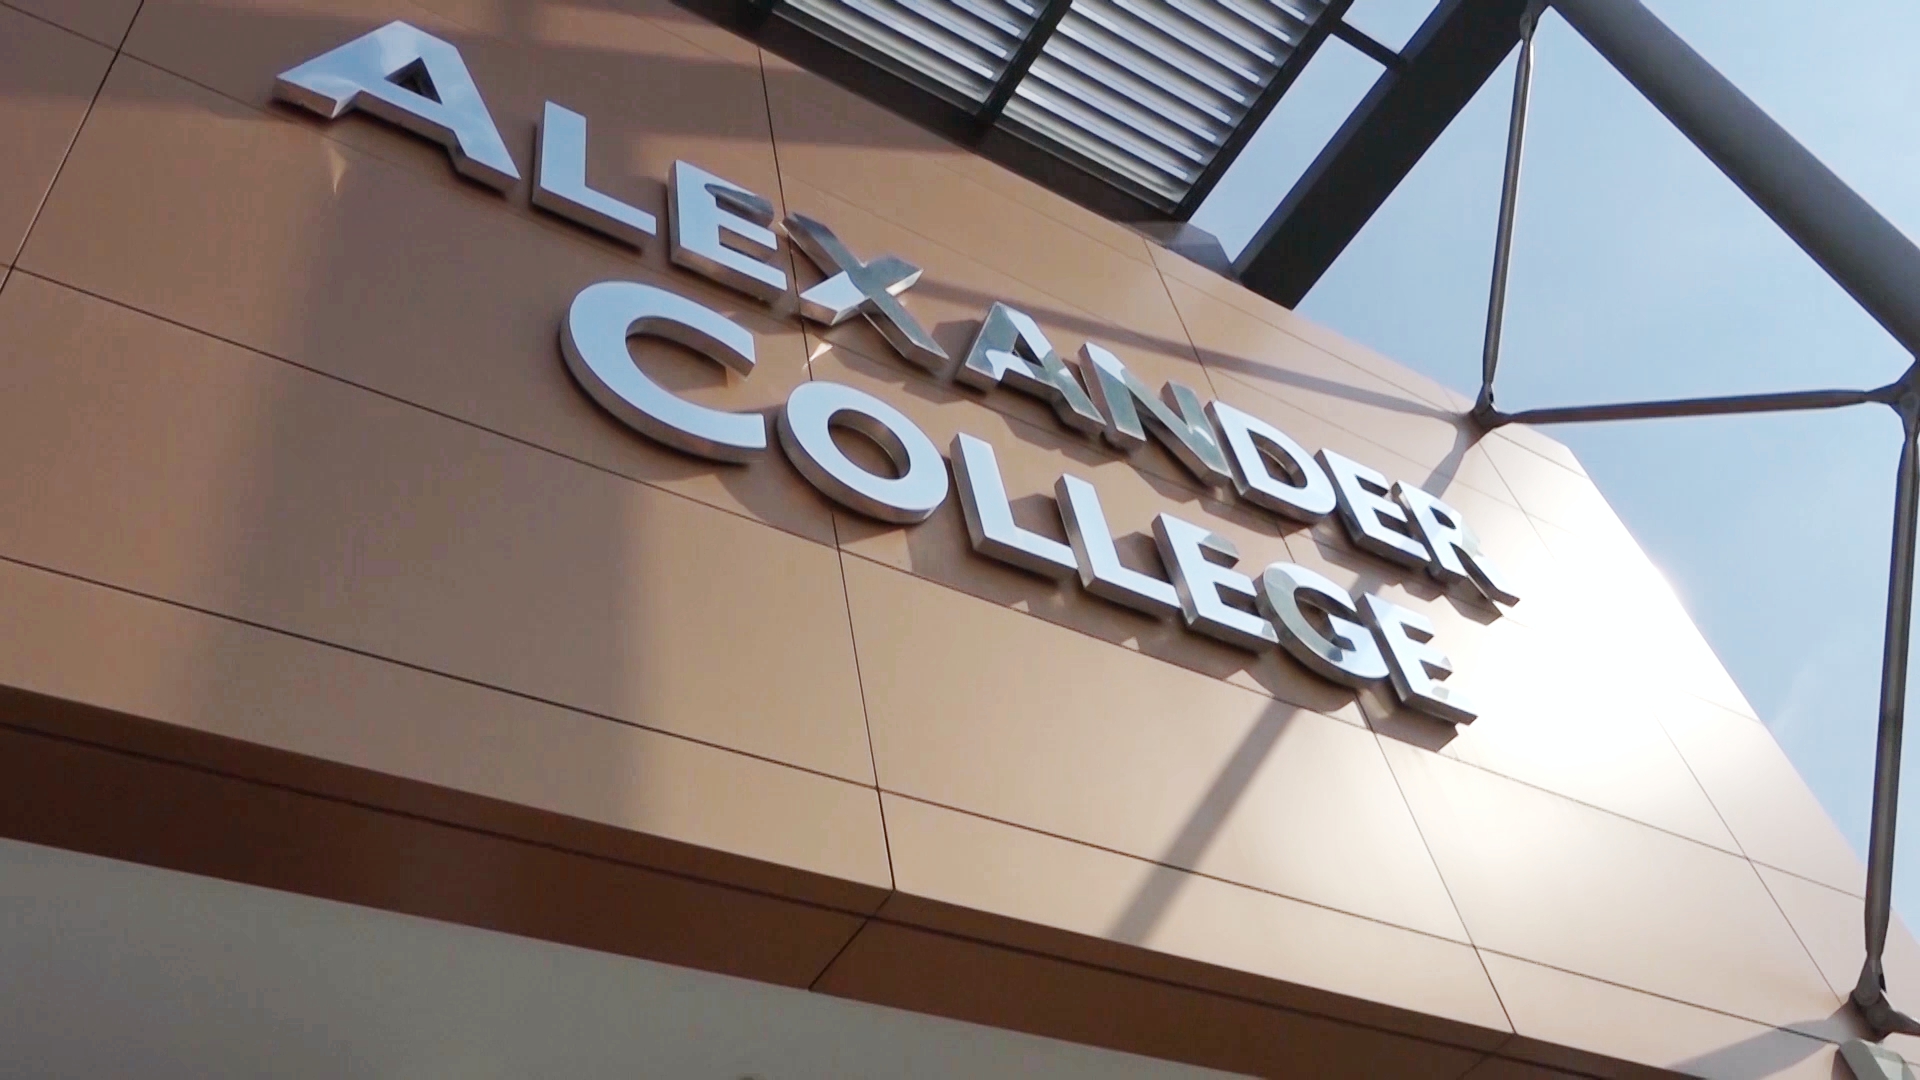 Με εξ αποστάσεως μαθήματα συνεχίζει το χειμερινό εξάμηνο το Alexander College